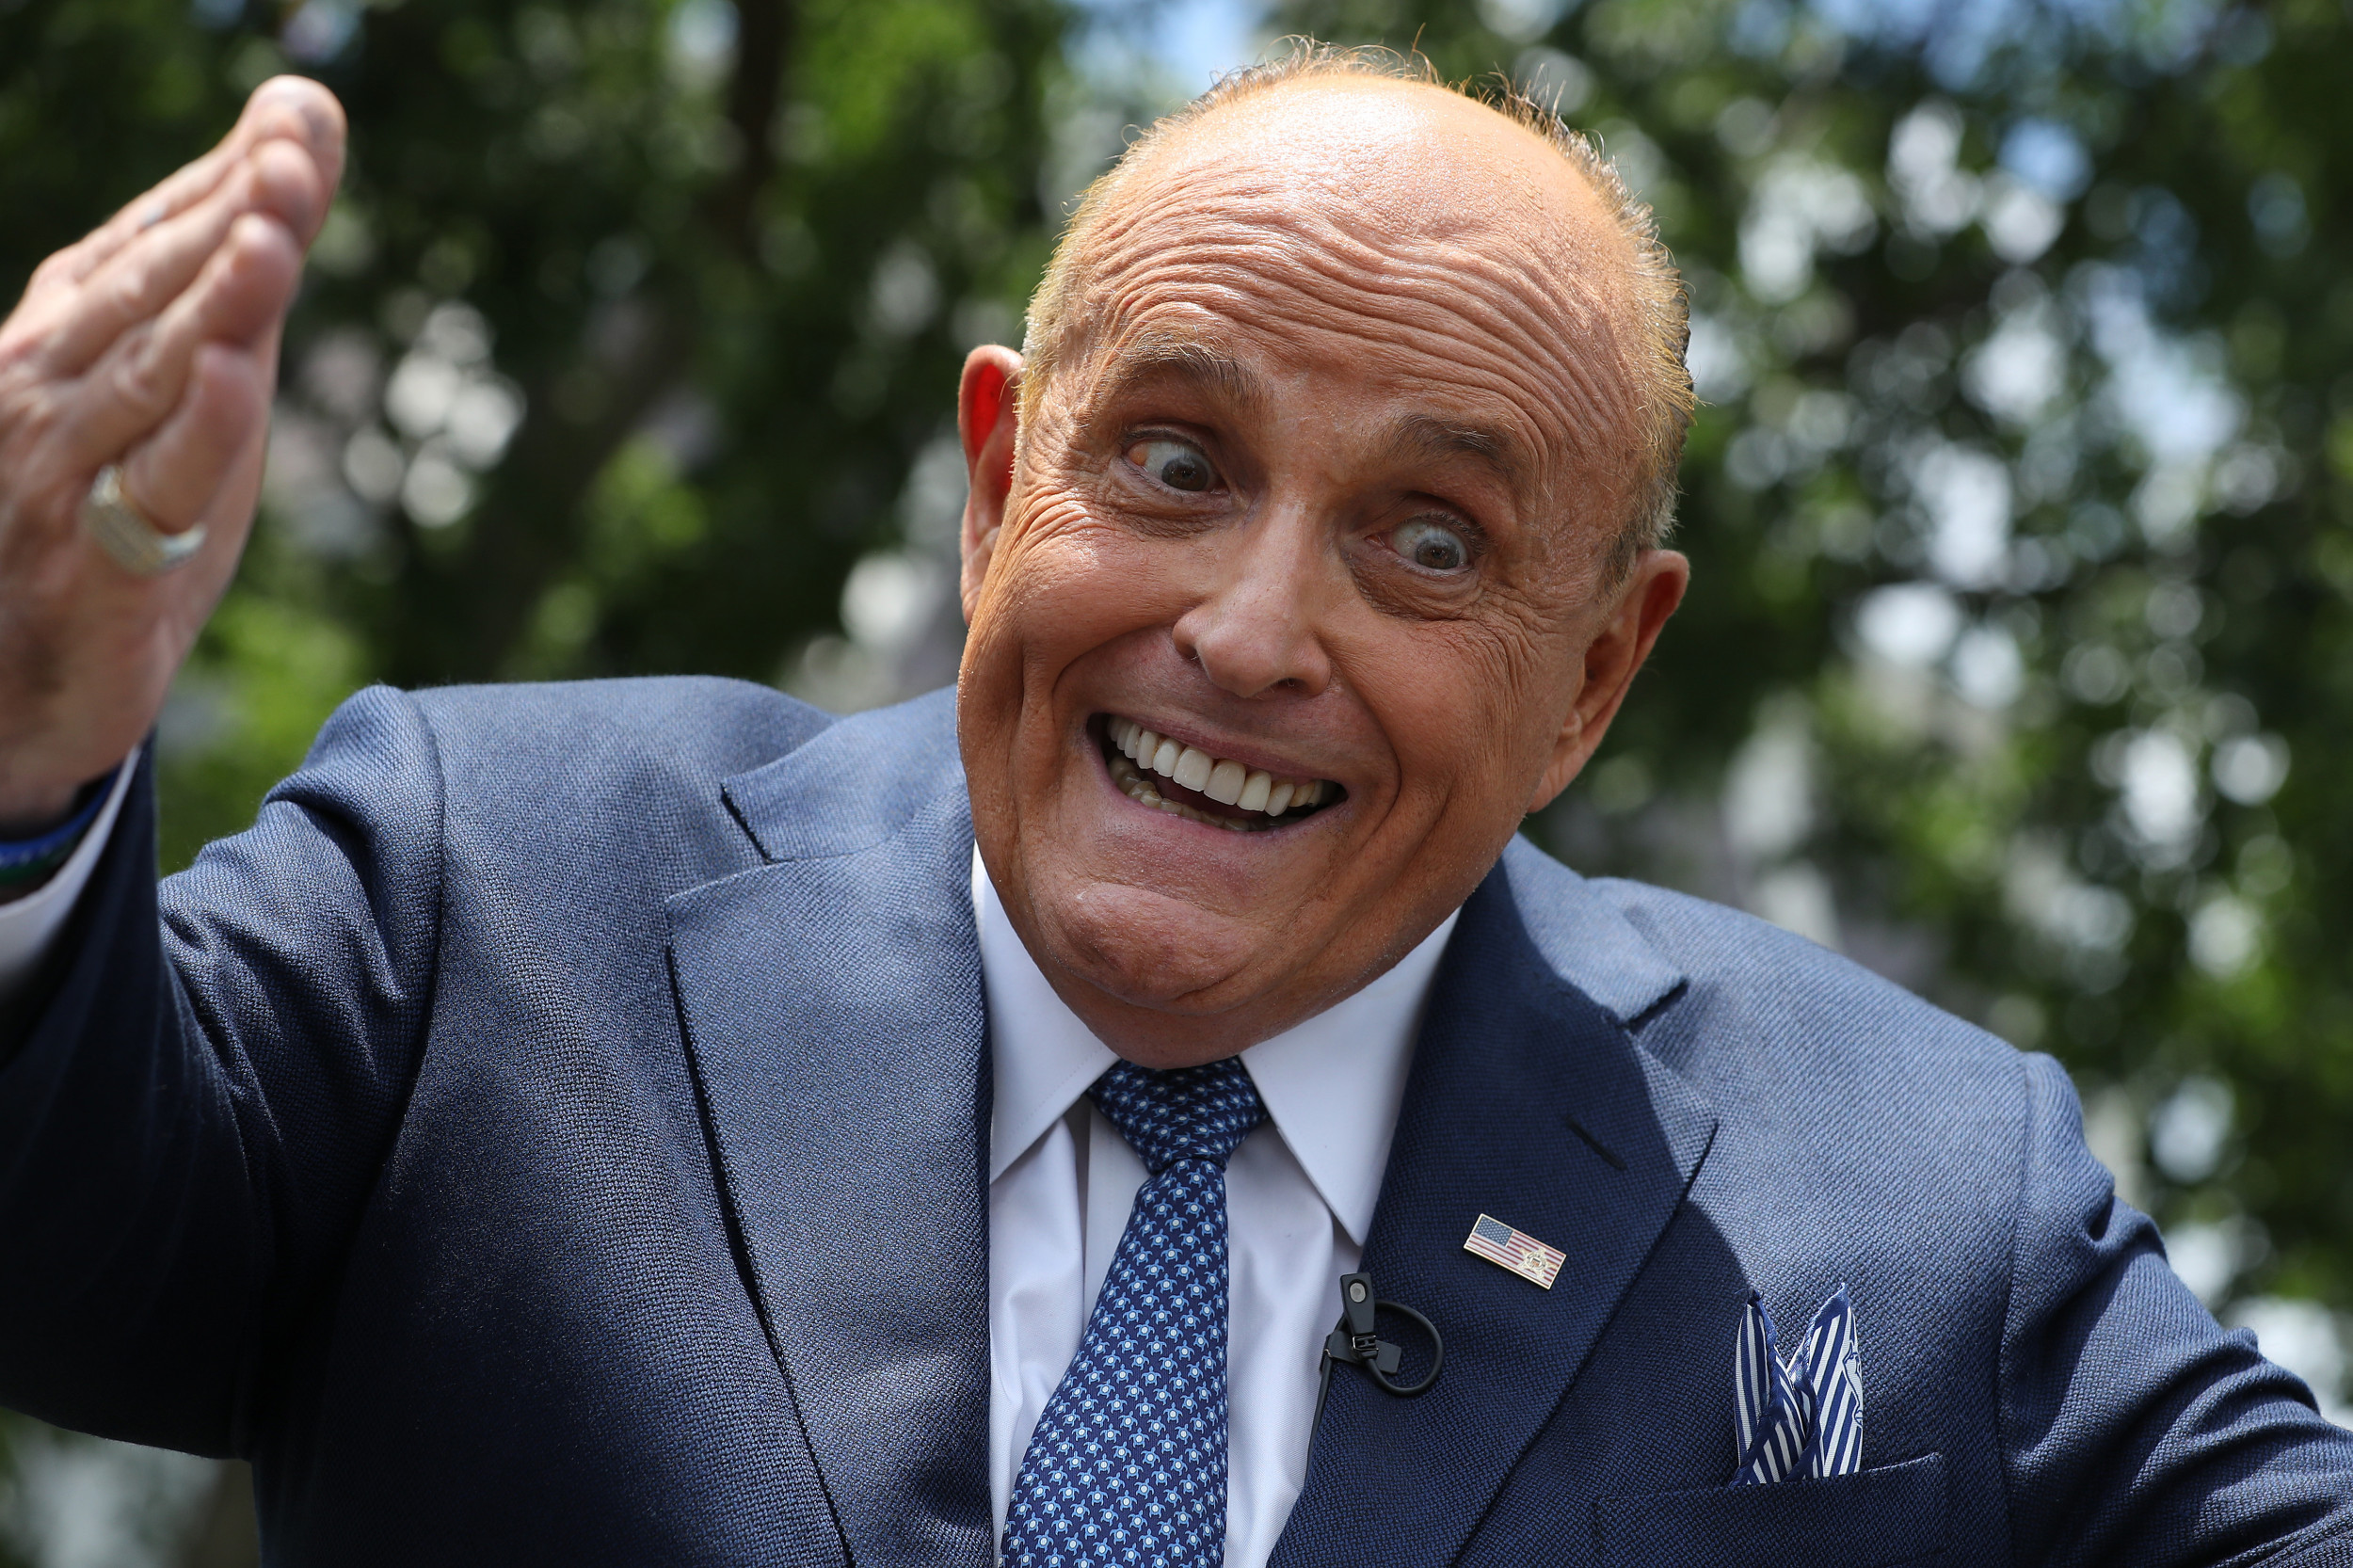 Rudy Giuliani Donald Trump 2020 Presidential Campaign 